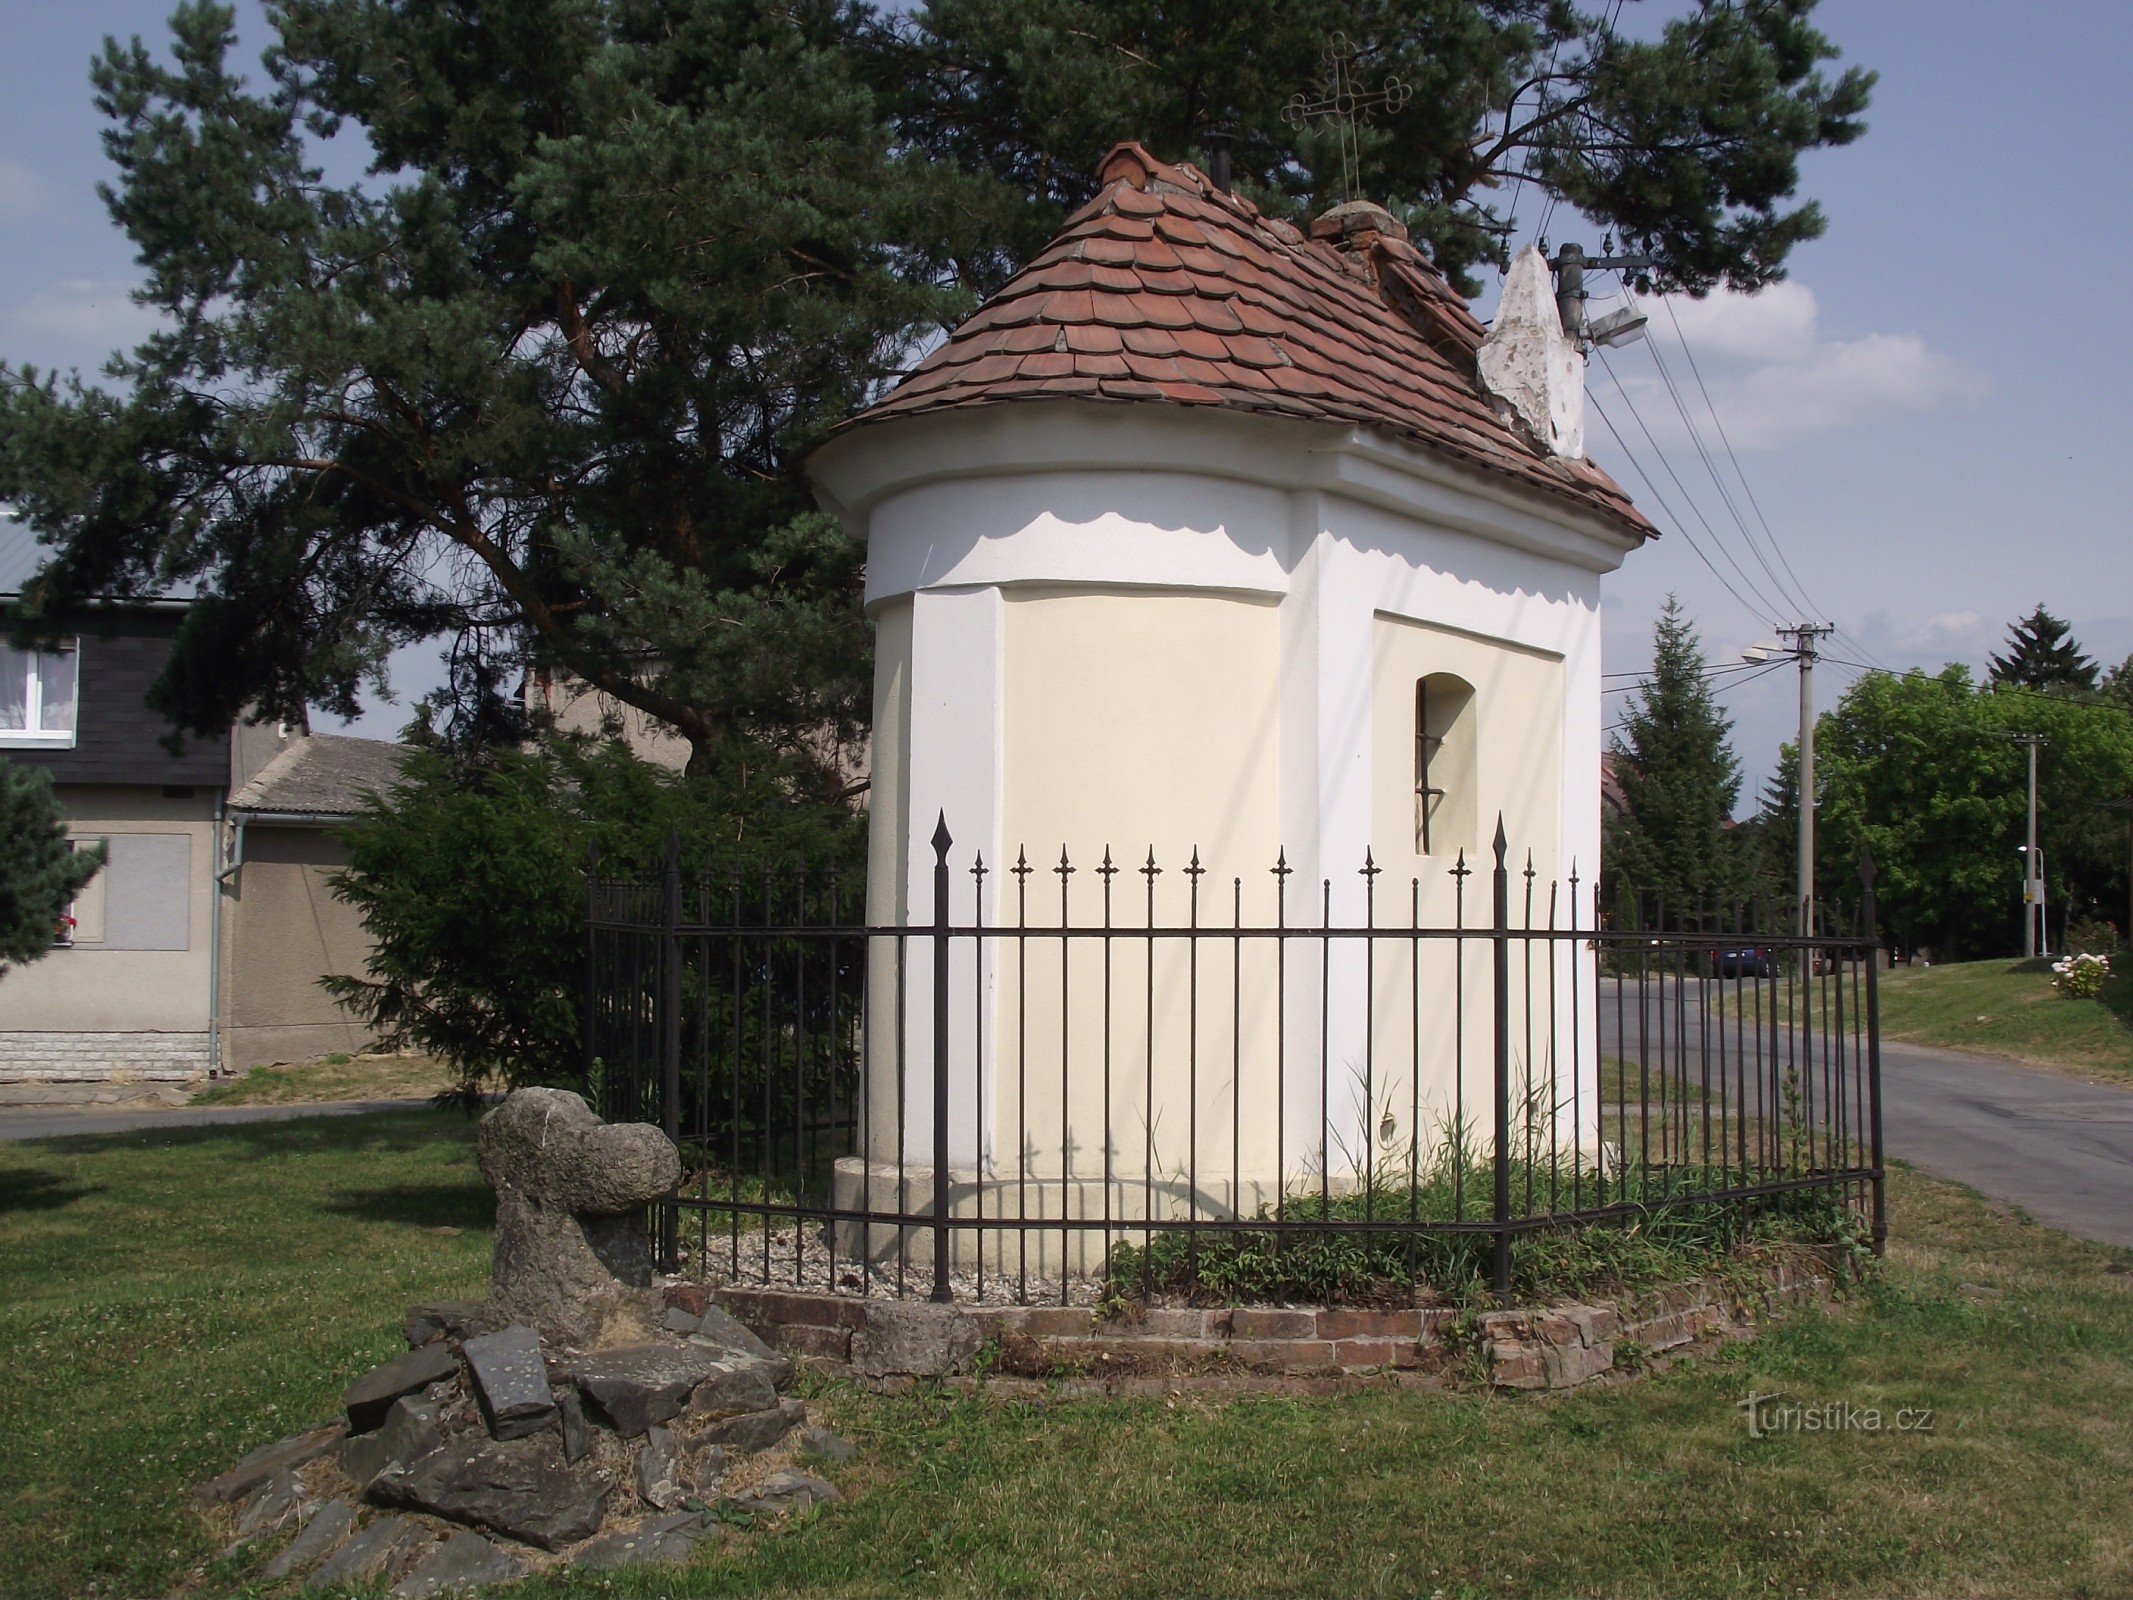 クレロフ – 聖母被昇天礼拝堂